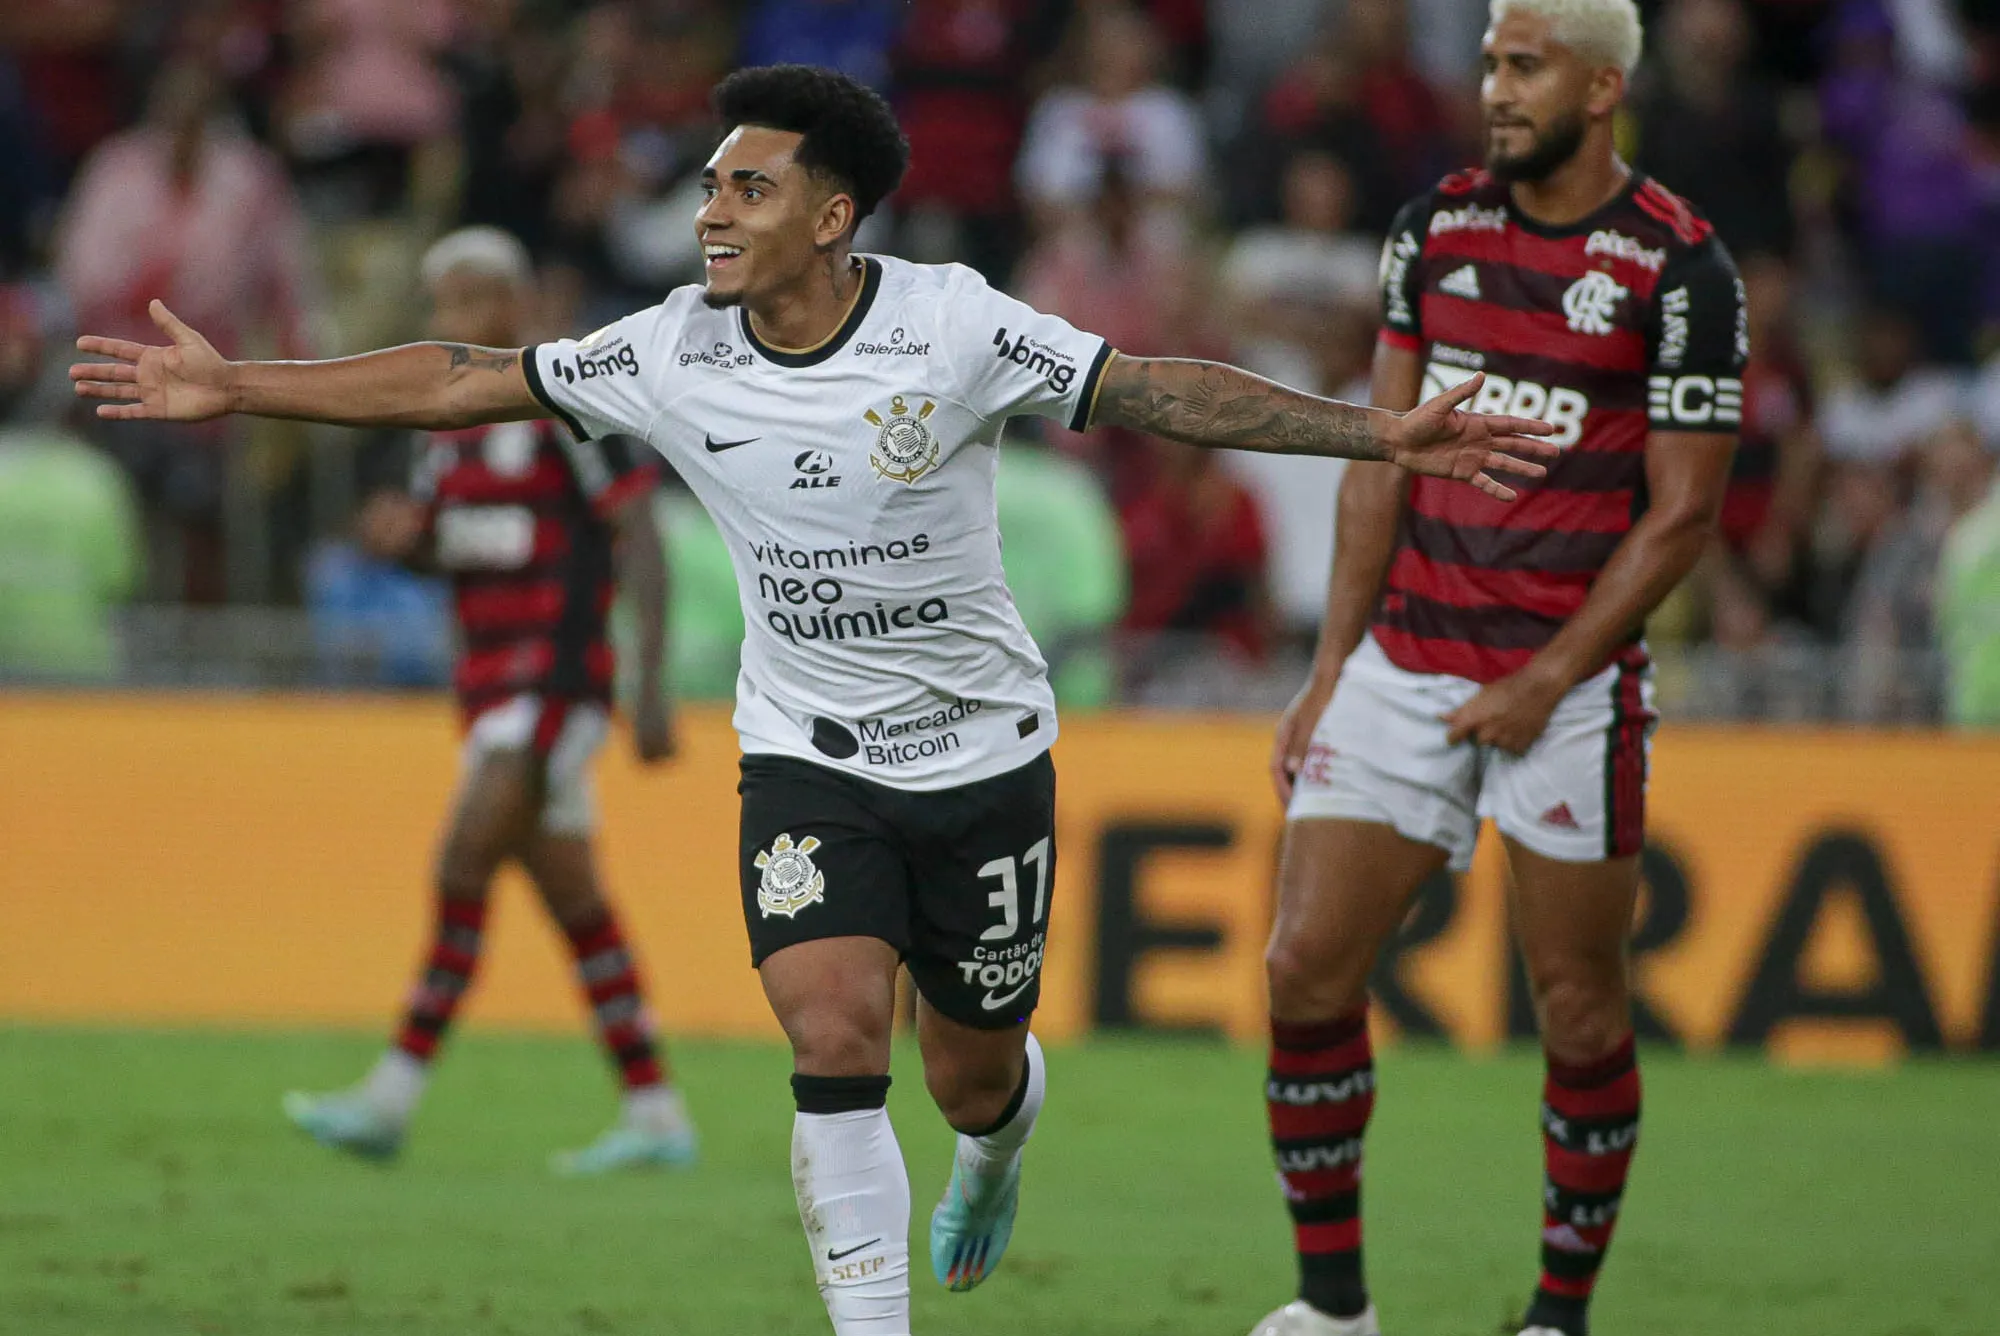 O Corinthians chega aos mesmos 61 pontos de Flamengo e Fluminense, ainda na quinta colocação